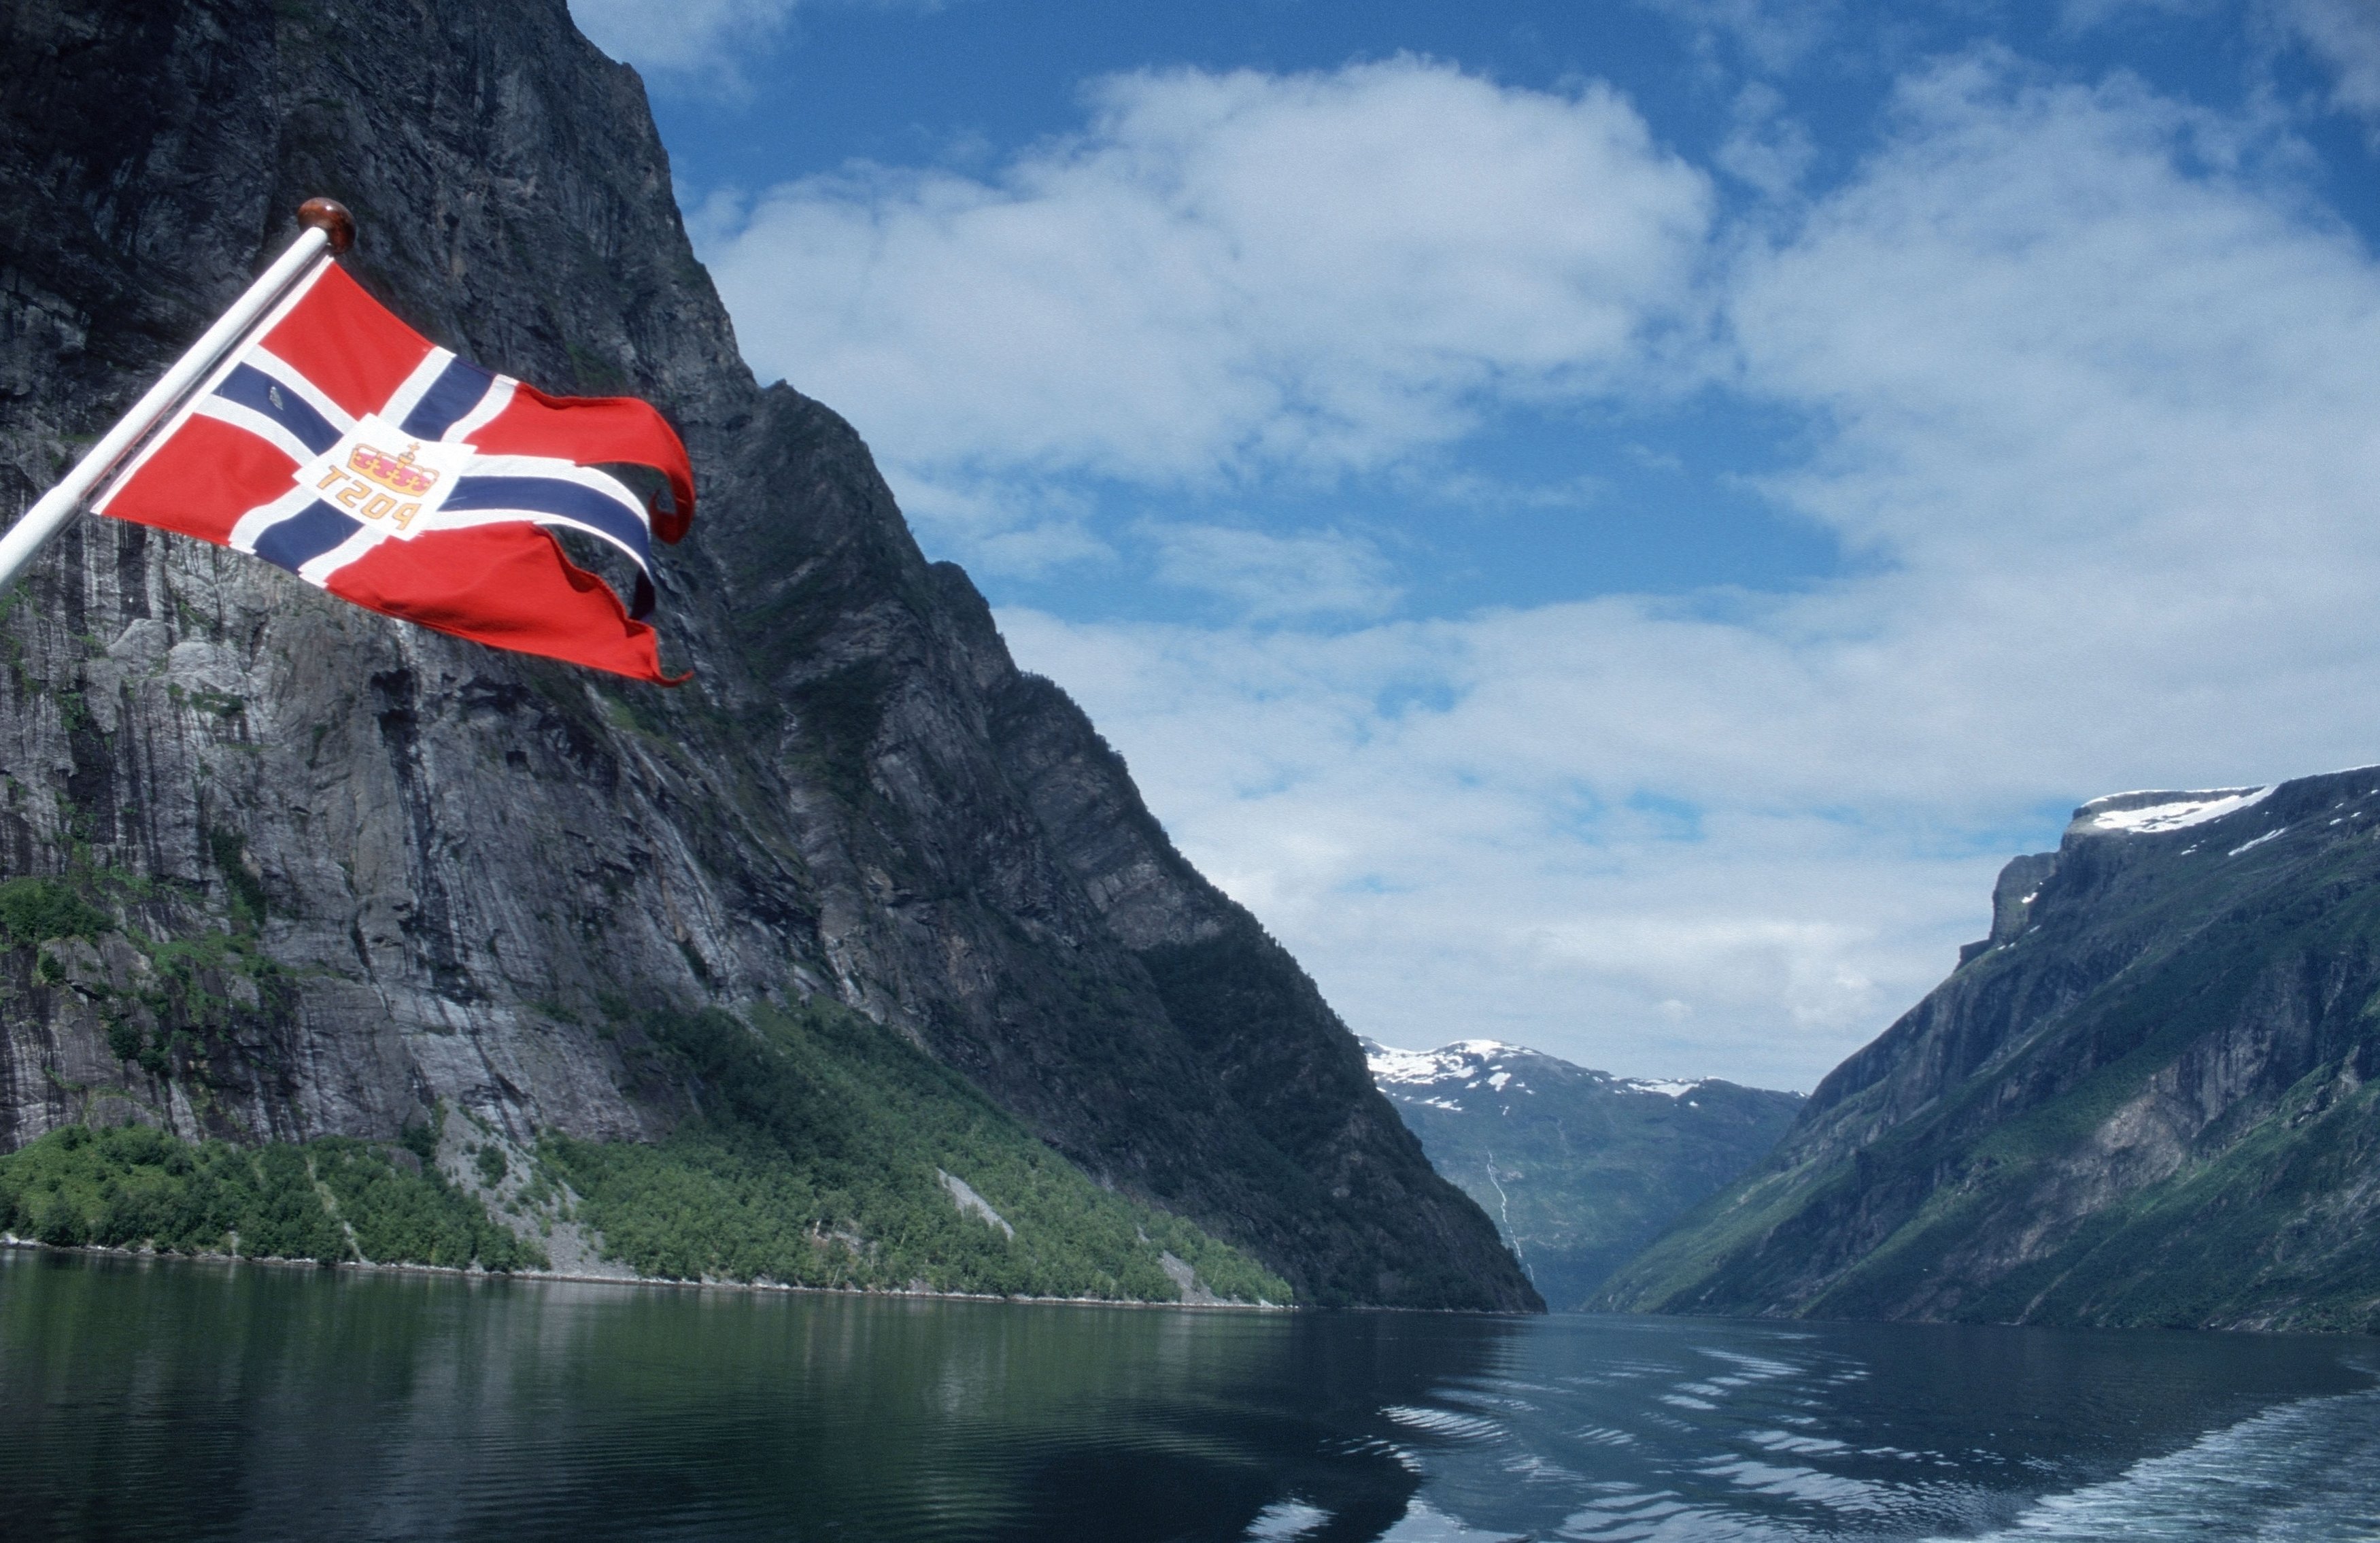 Норвегия 13. Норвегия Врадал. Хеннингсвер, Норвегия. Ковид в Норвегии. Флаг Норвегии и горы.